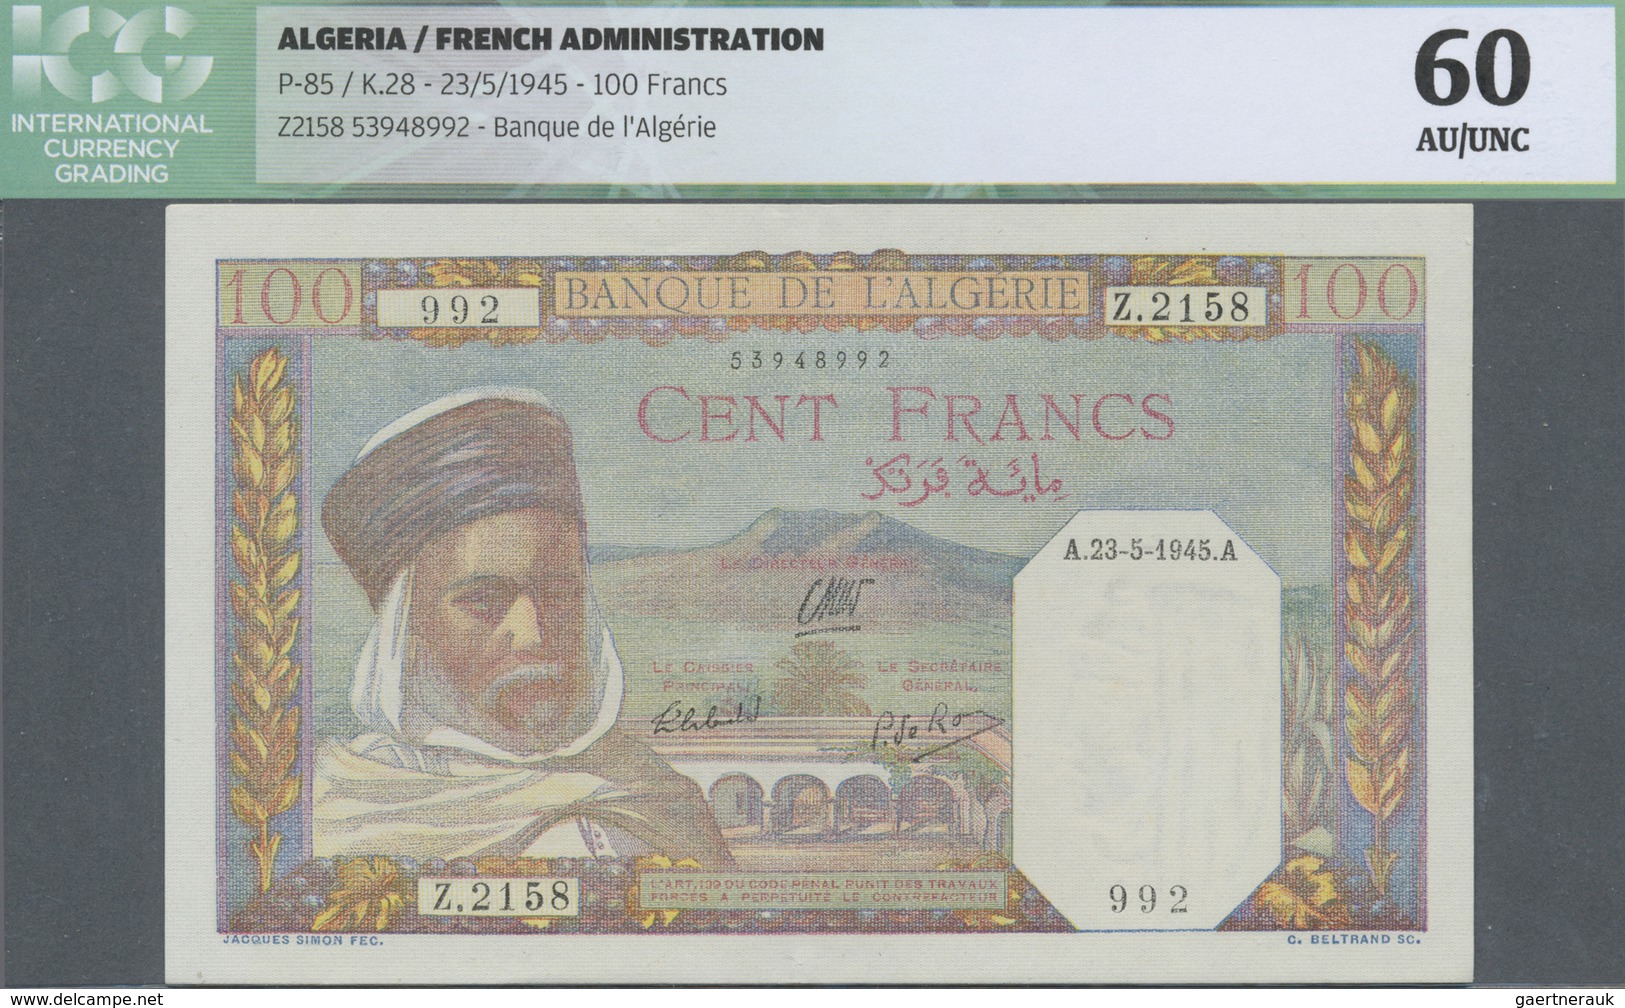 Algeria / Algerien: Banque De L'Algérie 100 Francs May 23rd 1945, P.85, Almost Perfect Condition, IC - Algeria